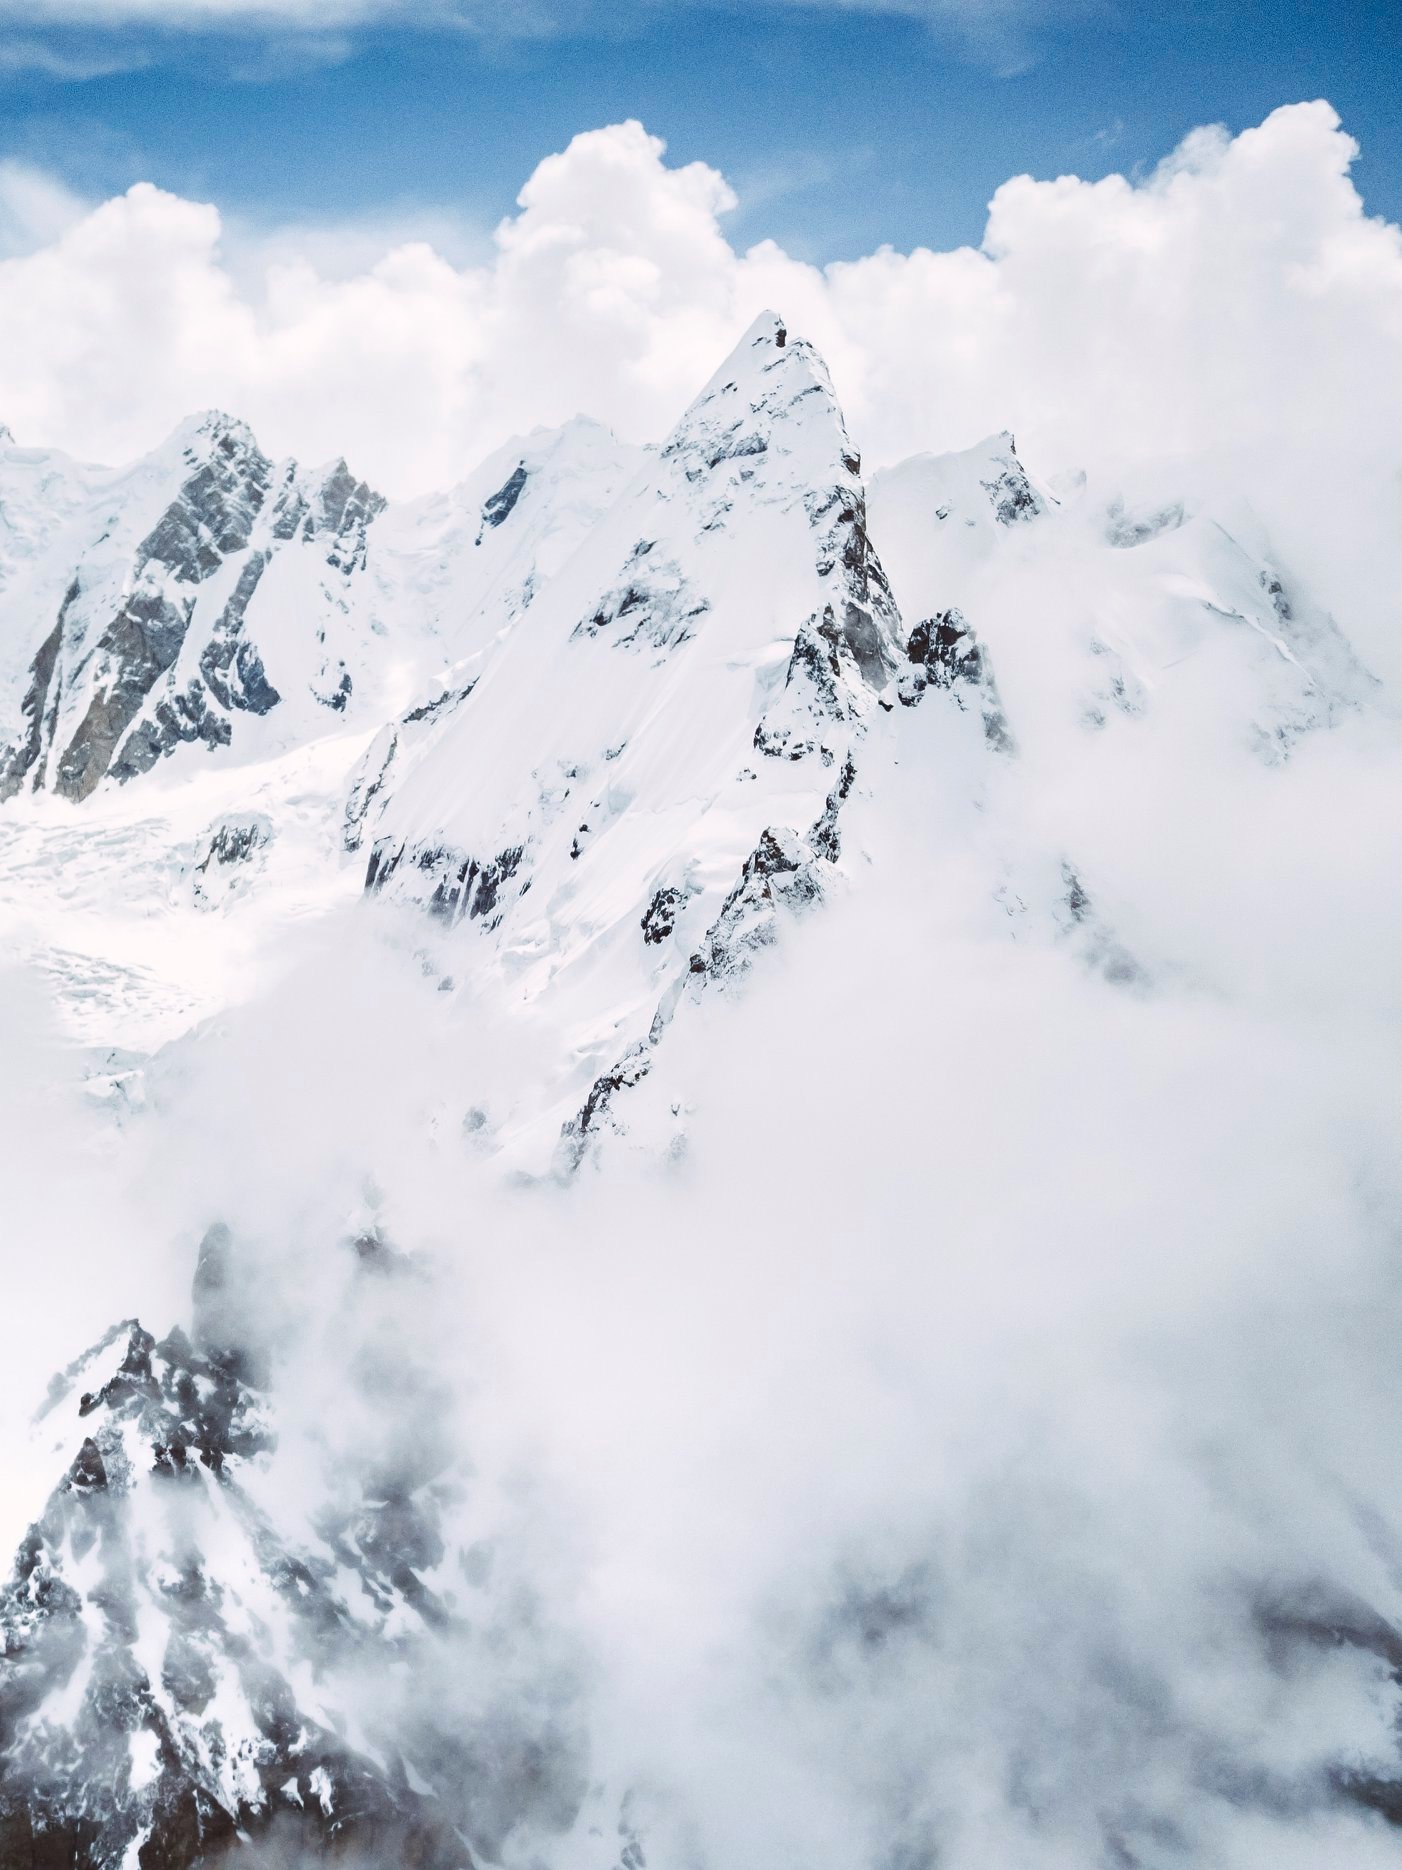 Лайла Пик (Laila Peak) высотой 6096 метров. Фото из базового лагеря команды Анджея Баргеля